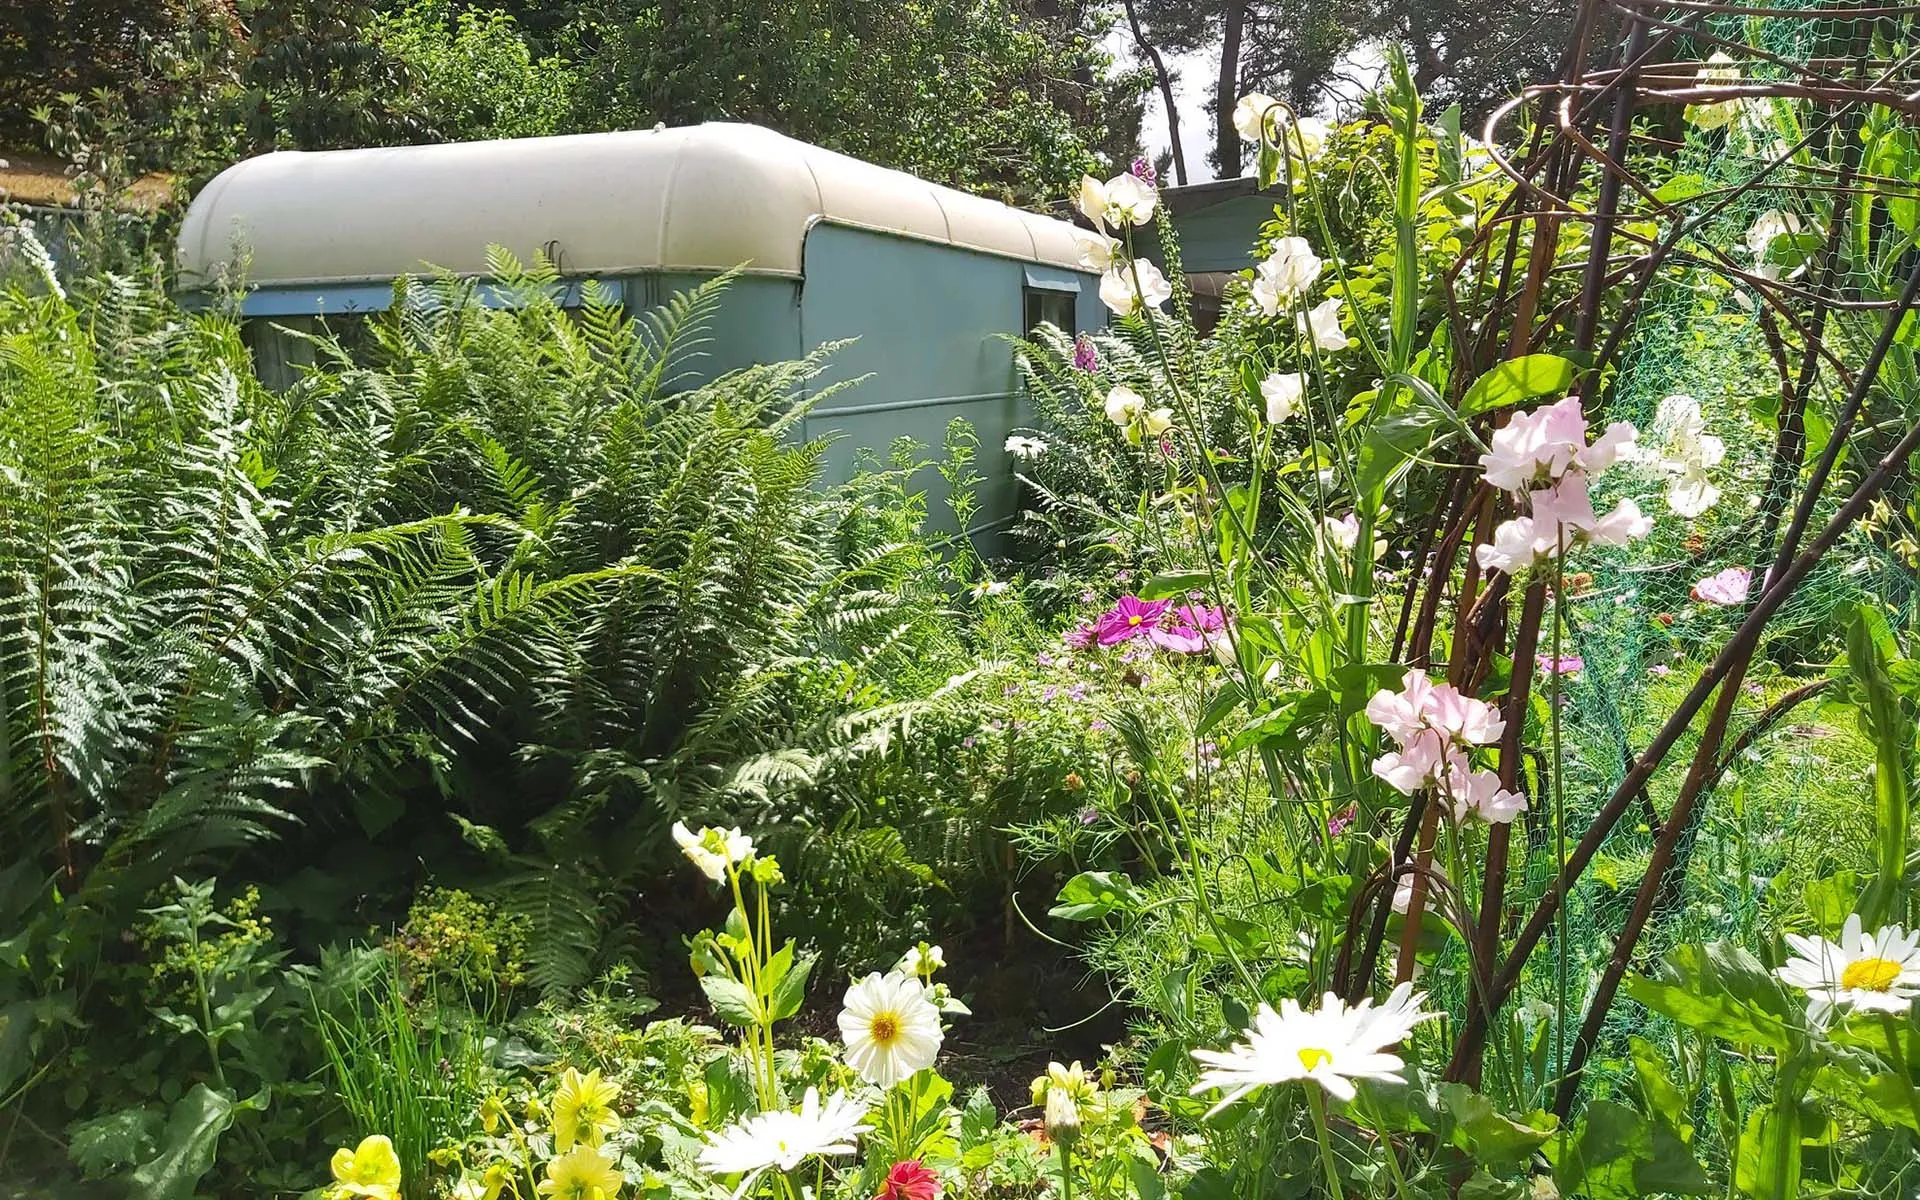 Original Caravan in the Original Garden surrounded by flowers in summer